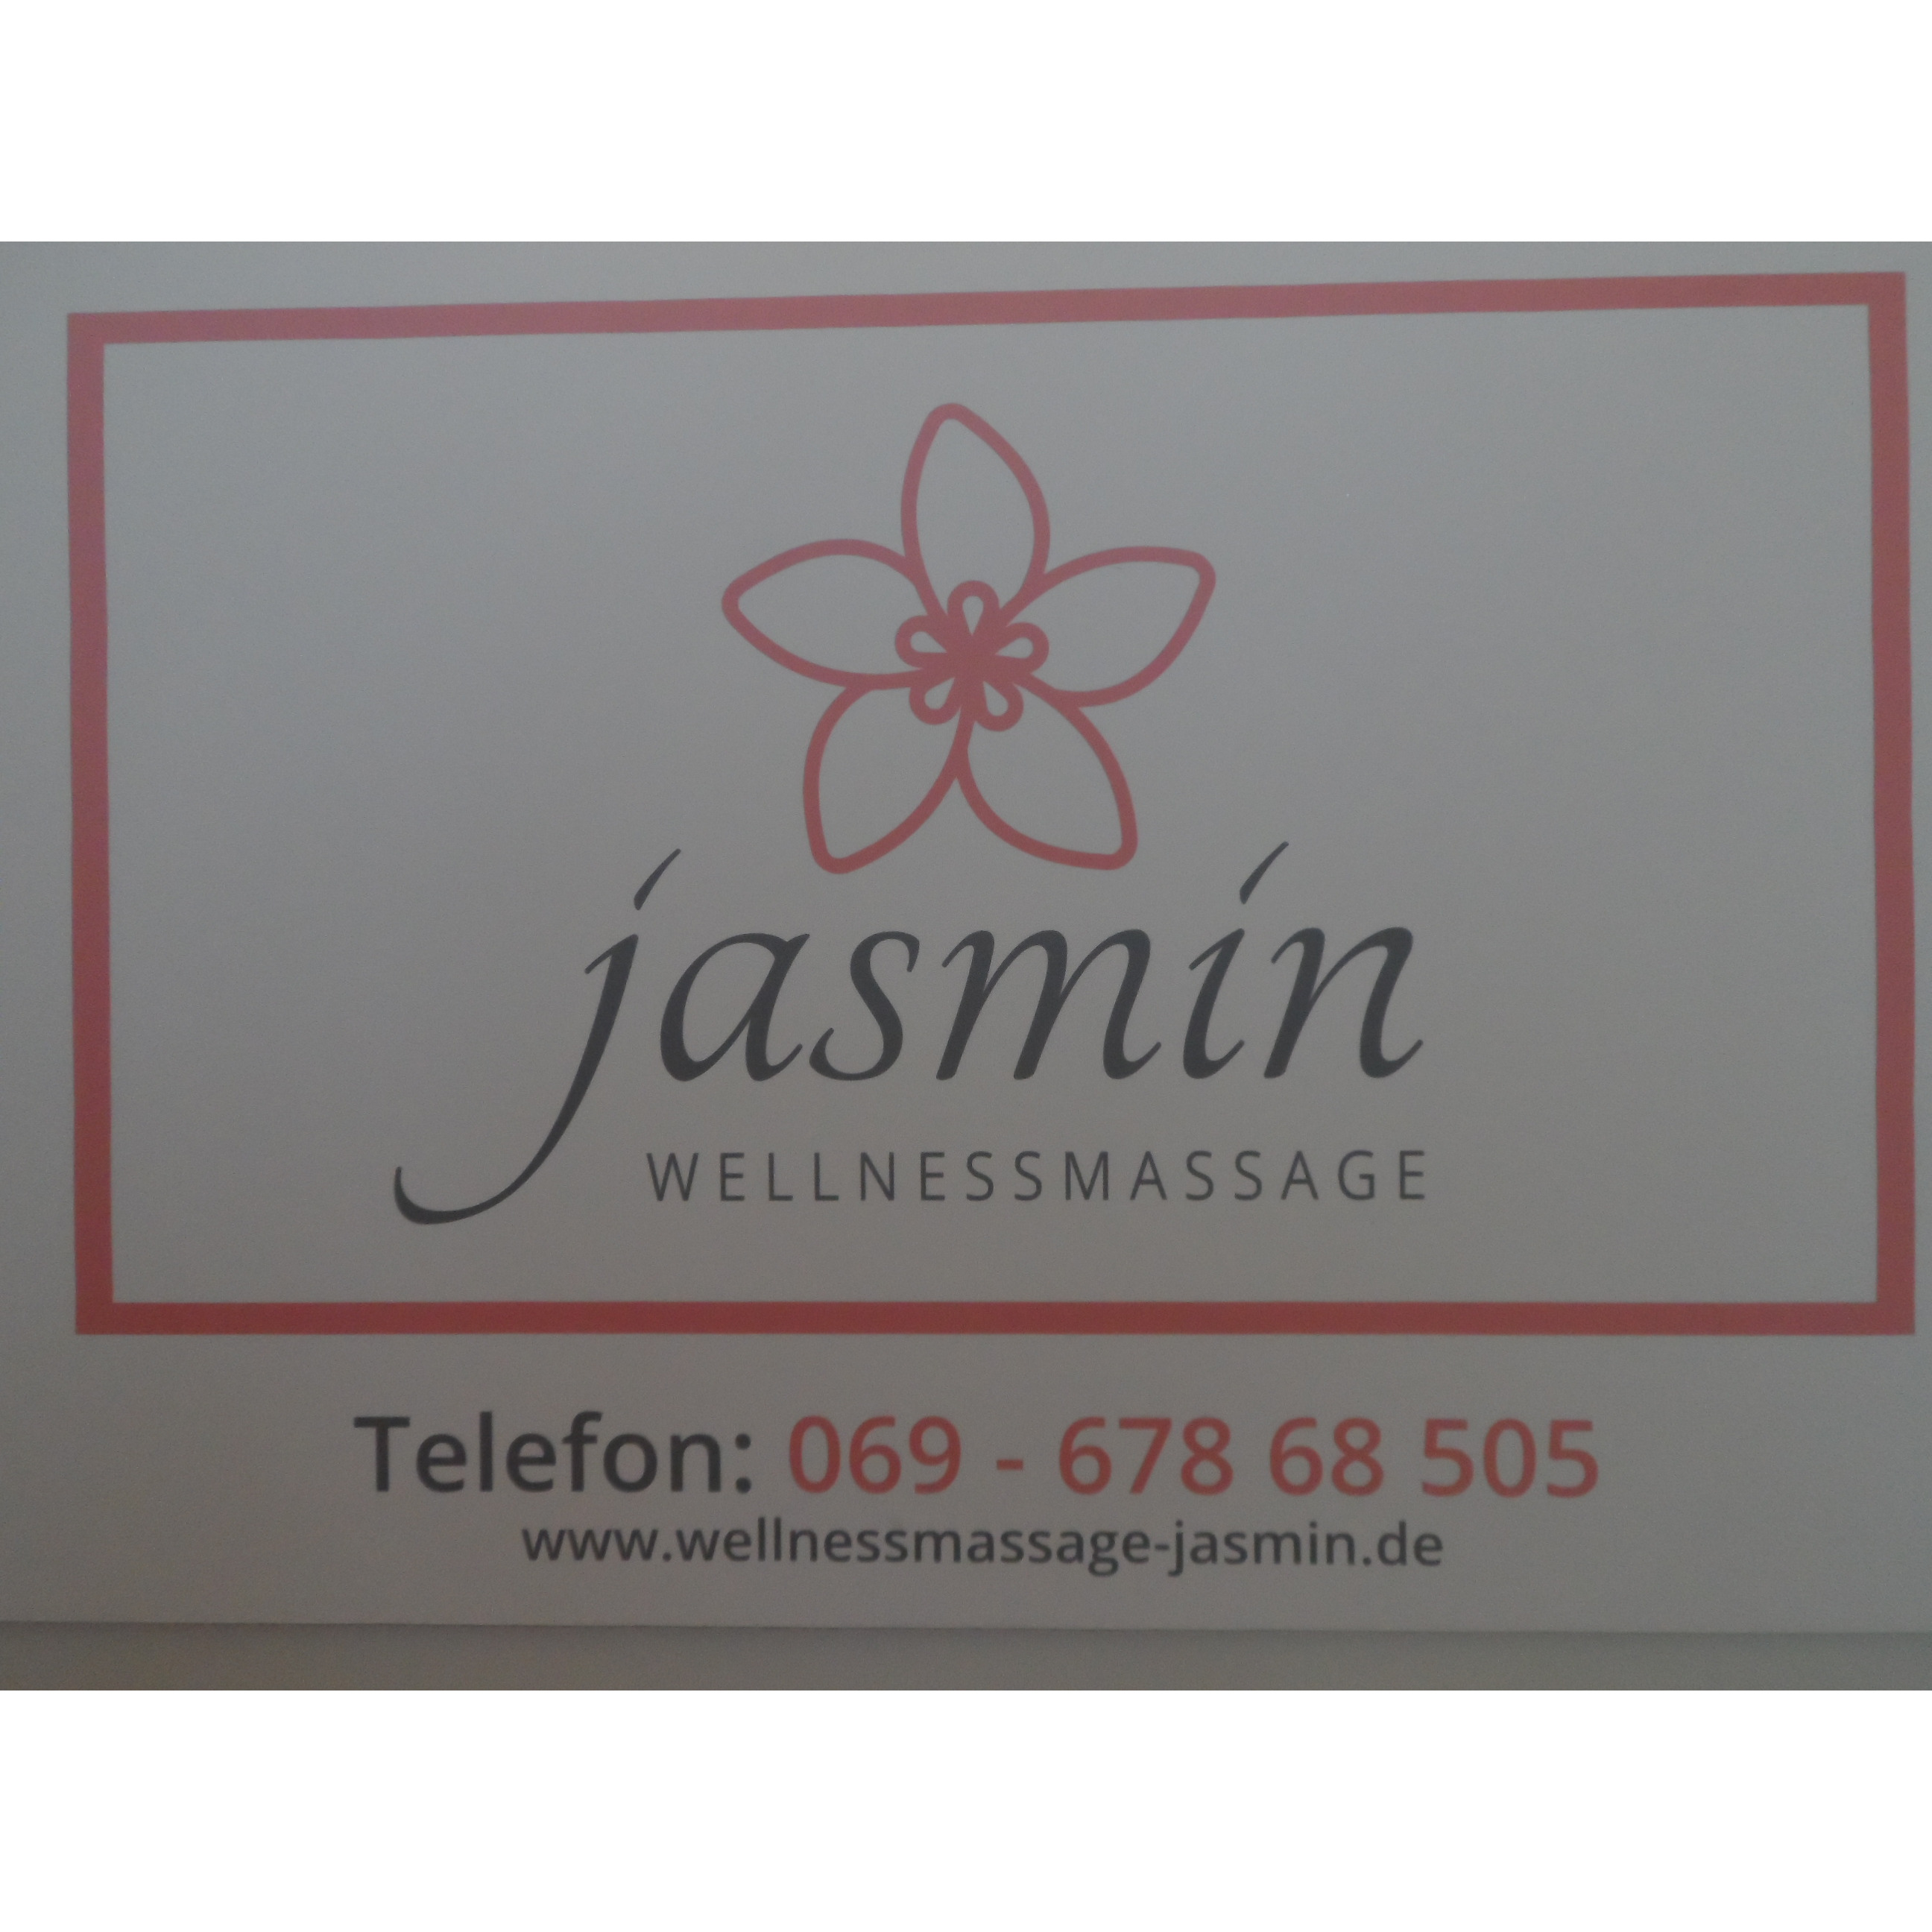 Wellnessmassage Jasmin in Frankfurt am Main - Logo